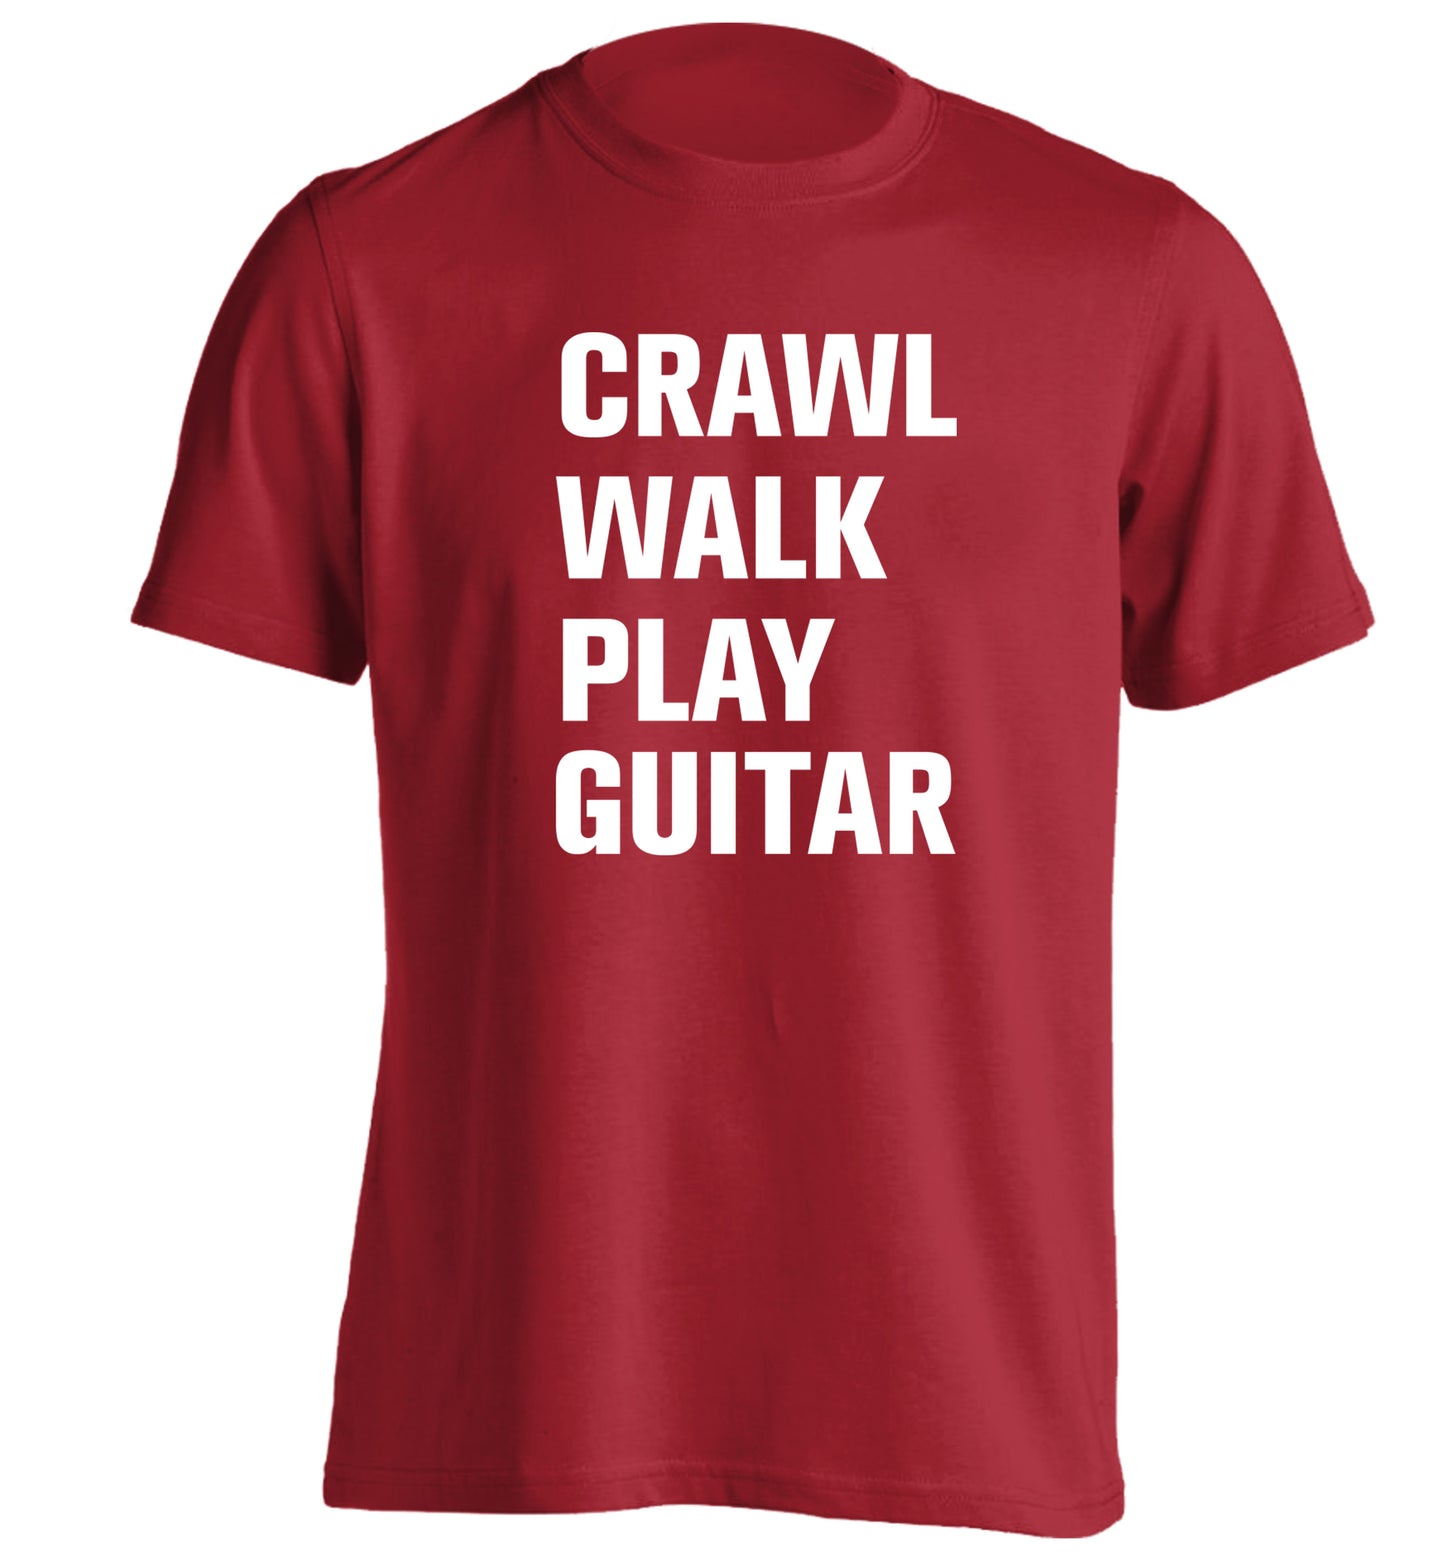 Crawl walk play guitar adults unisex red Tshirt 2XL